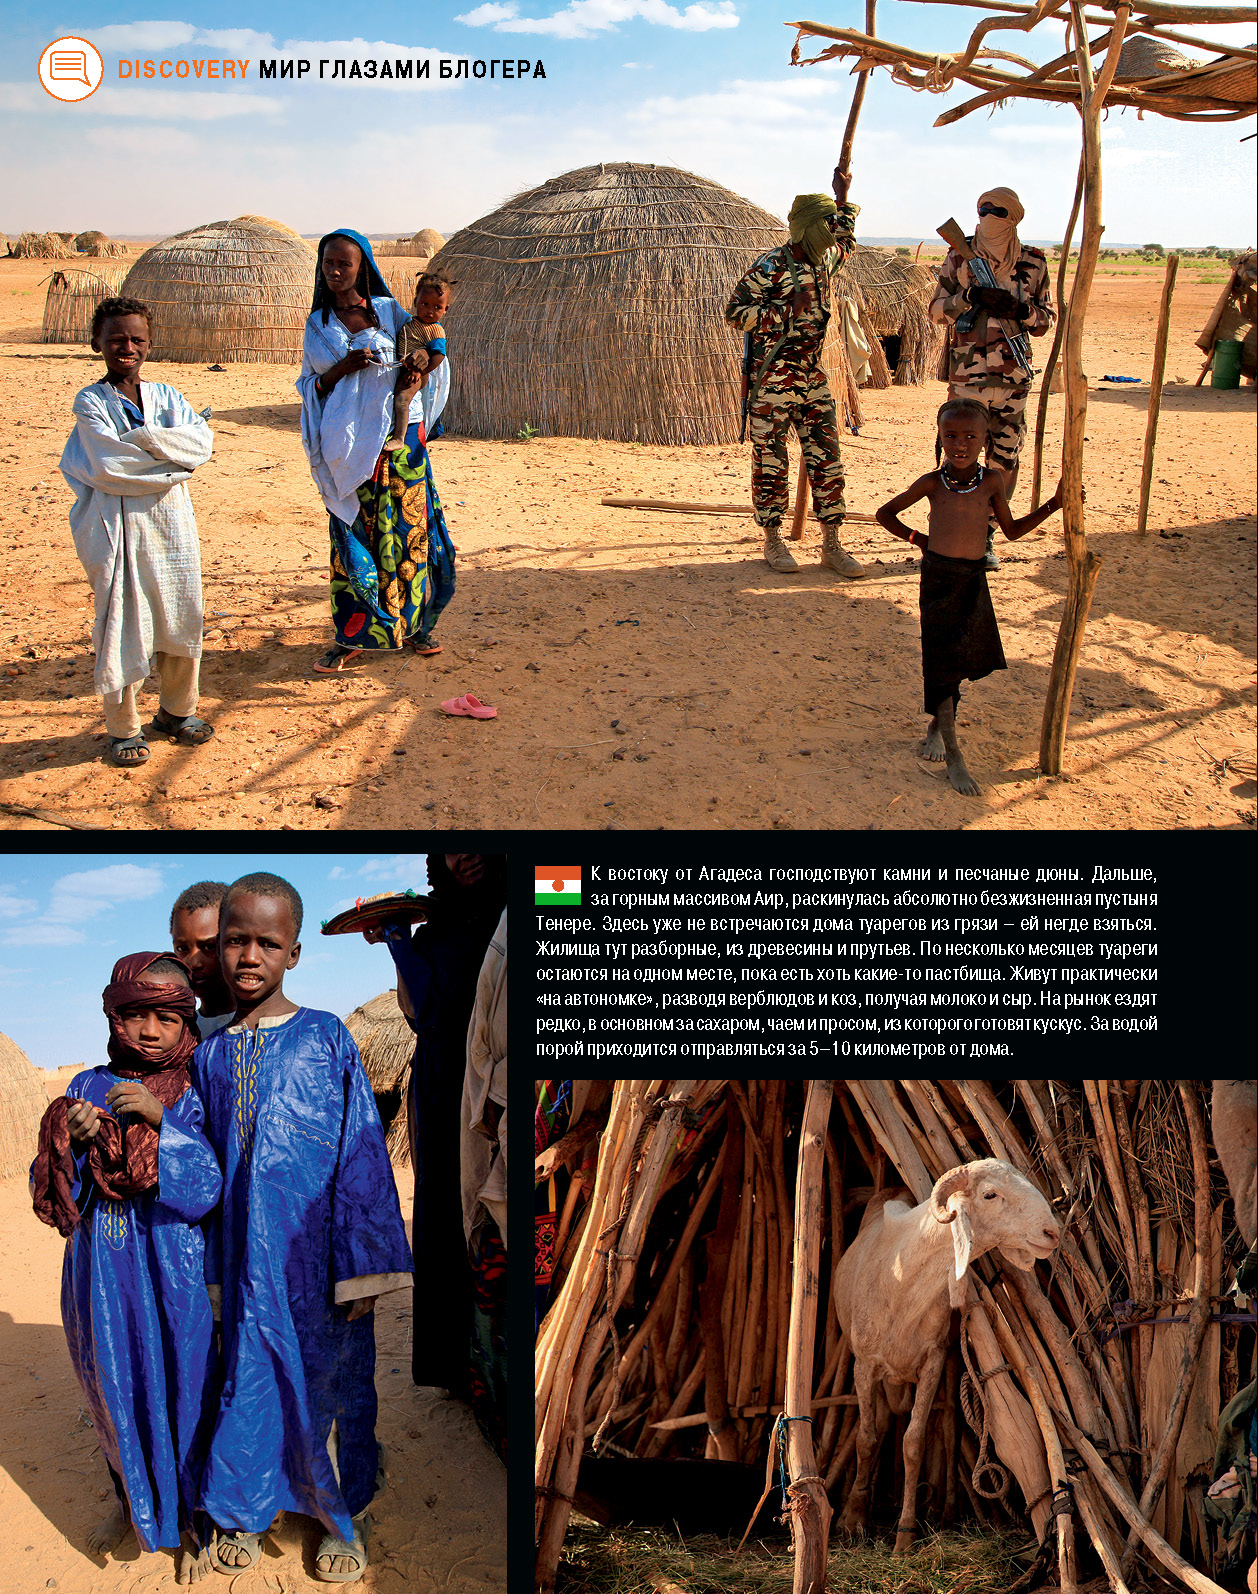 Нигер: Театр посреди Сахары.  Путевые заметки по Нигеру. Сентябрь 2013